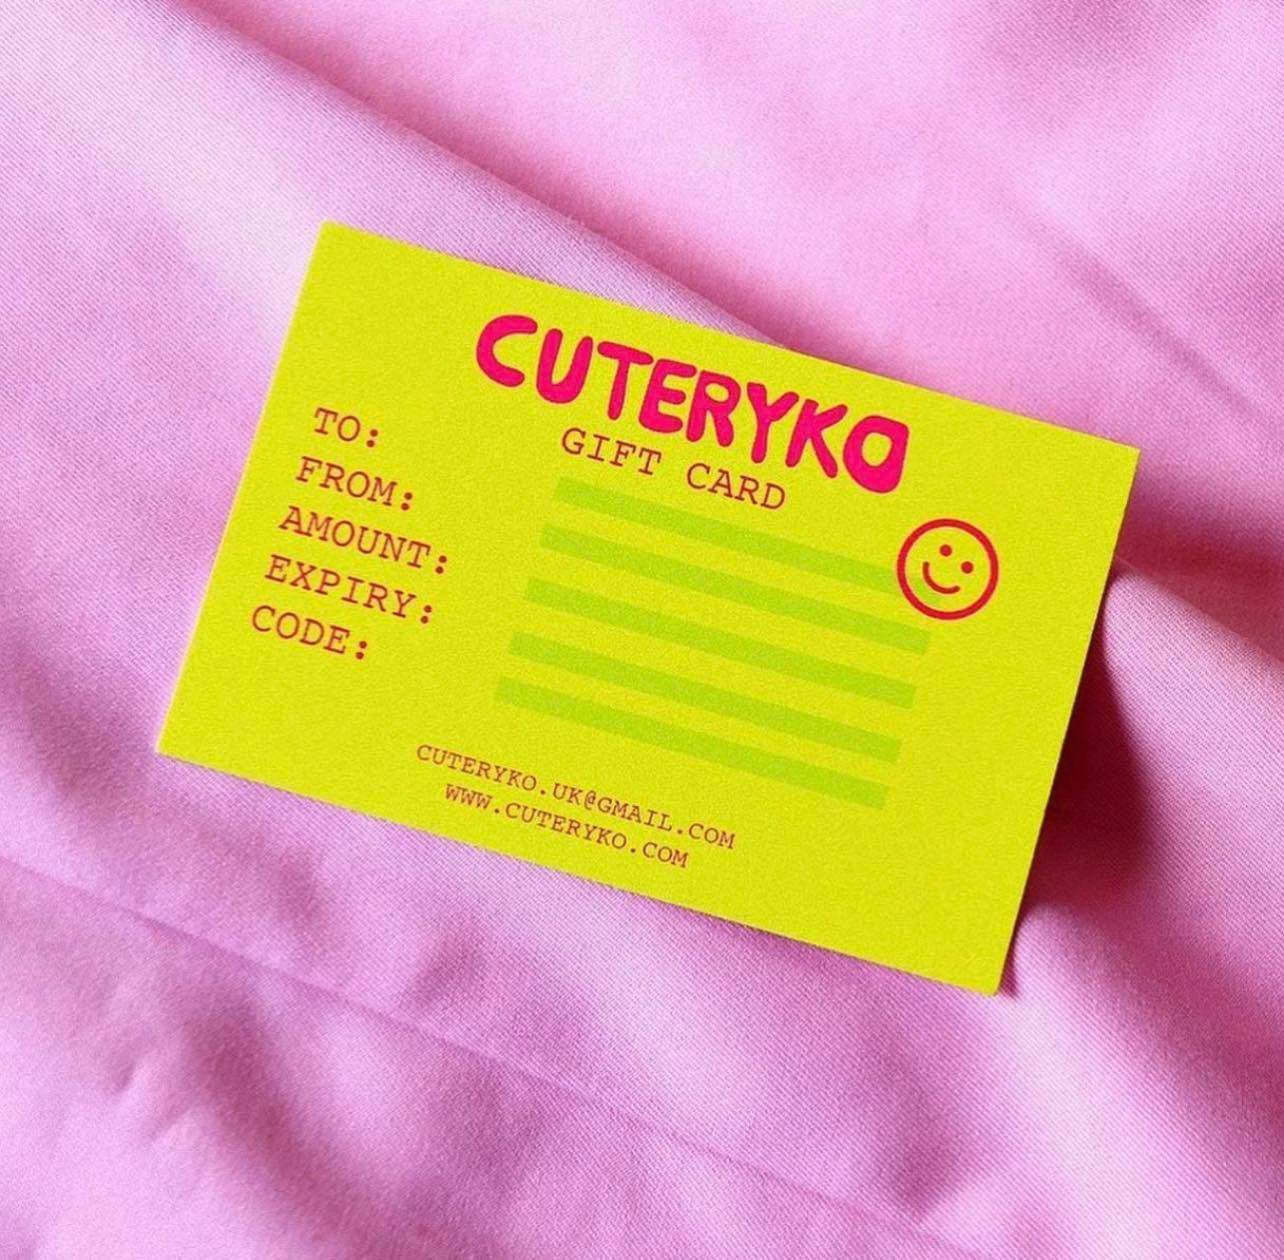 Cuteryko Gift Card